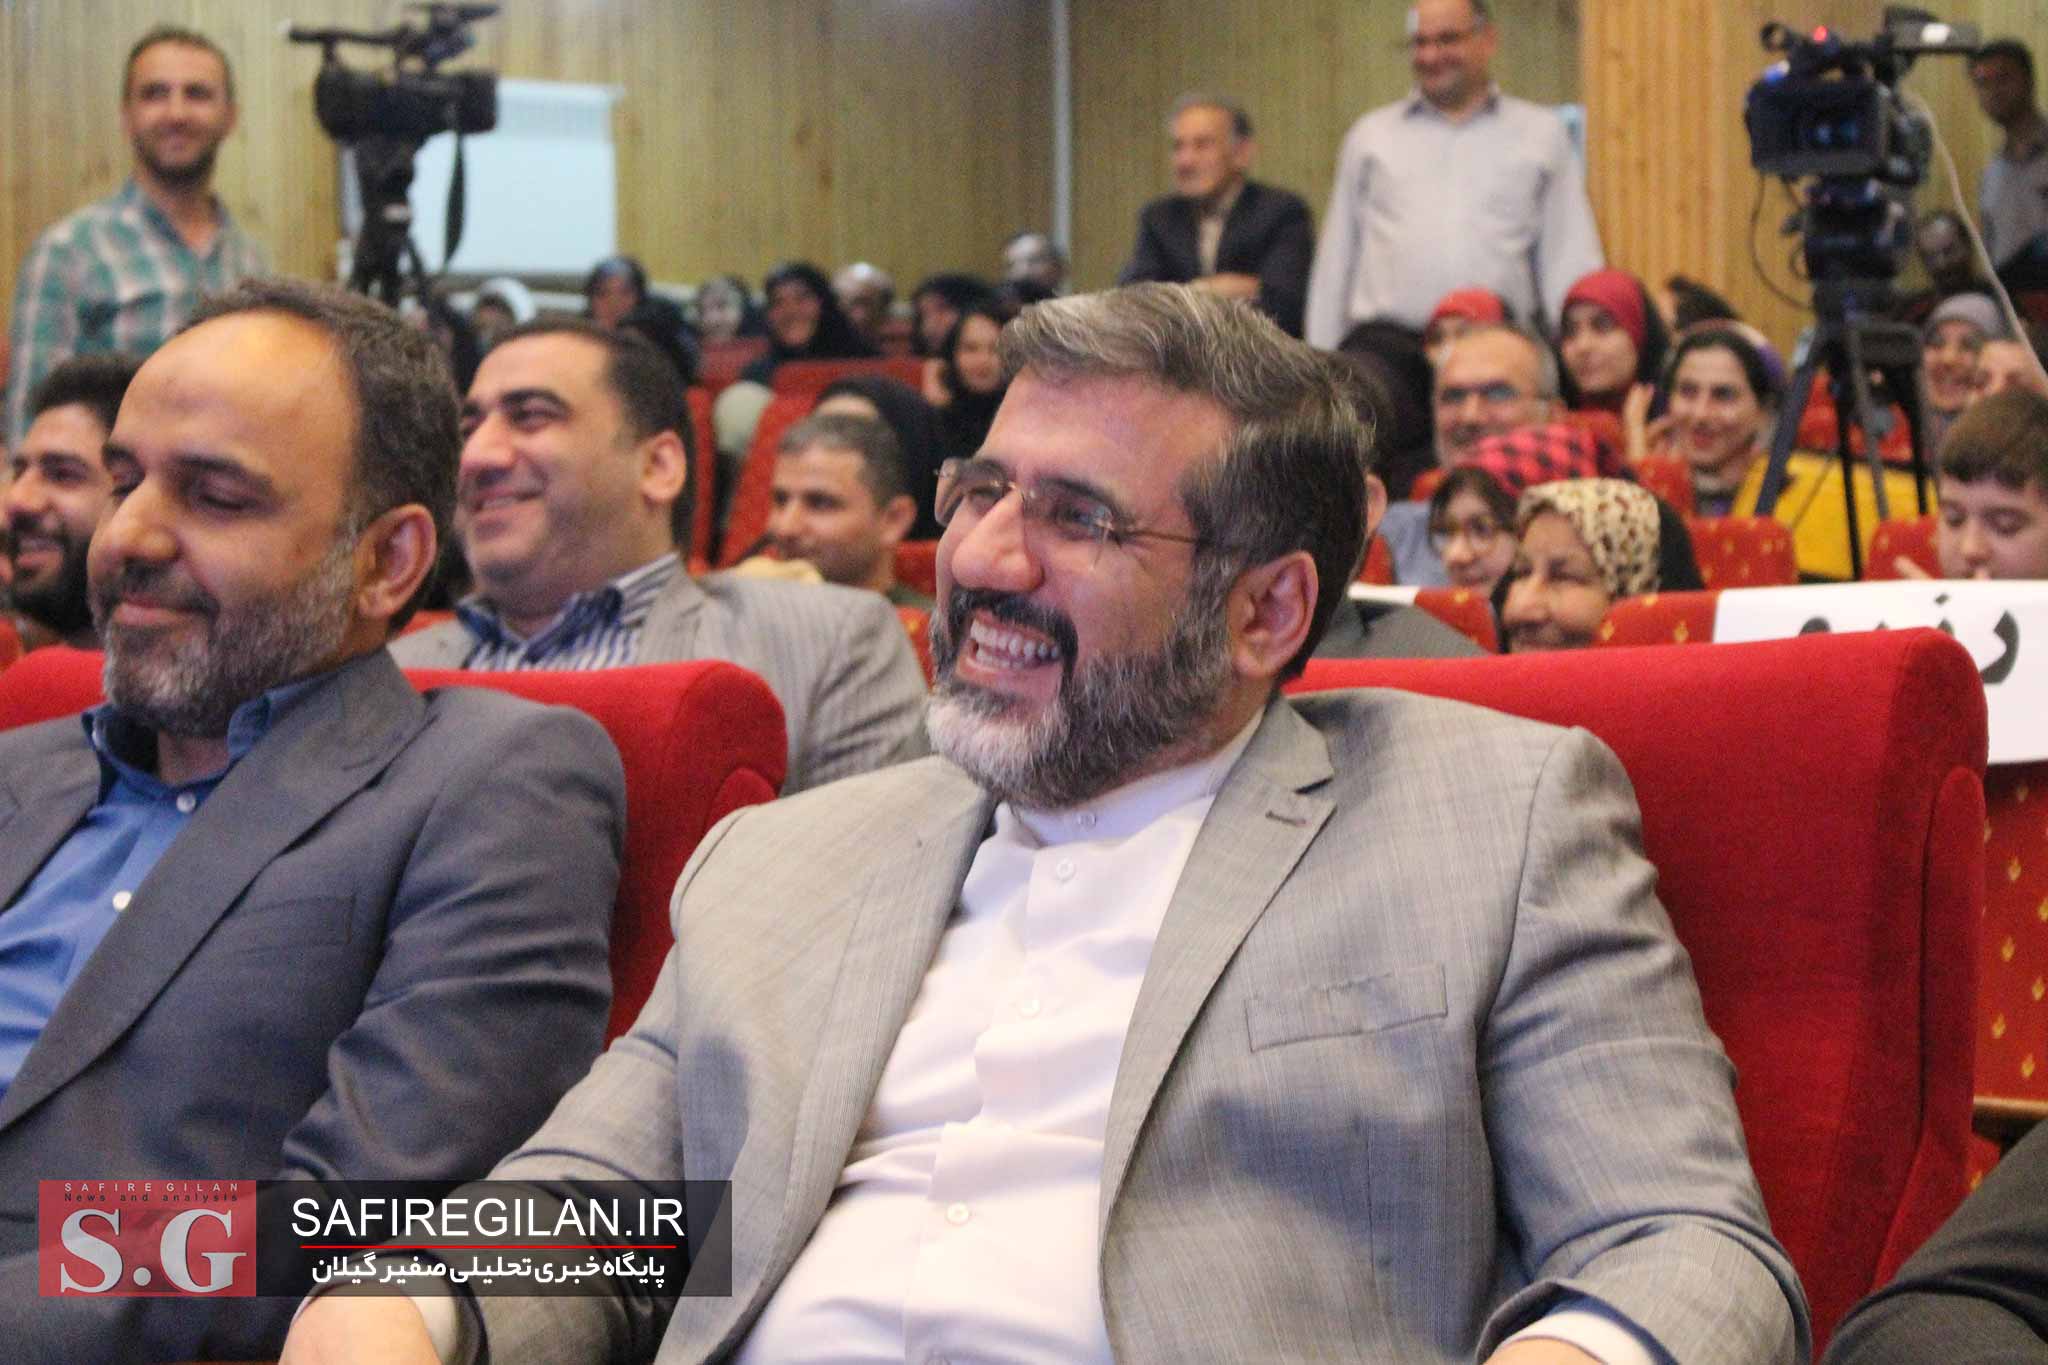 گل آقا منشأ تحول طنز در رسانه و فومن مرکز طنز کشور در ایران است